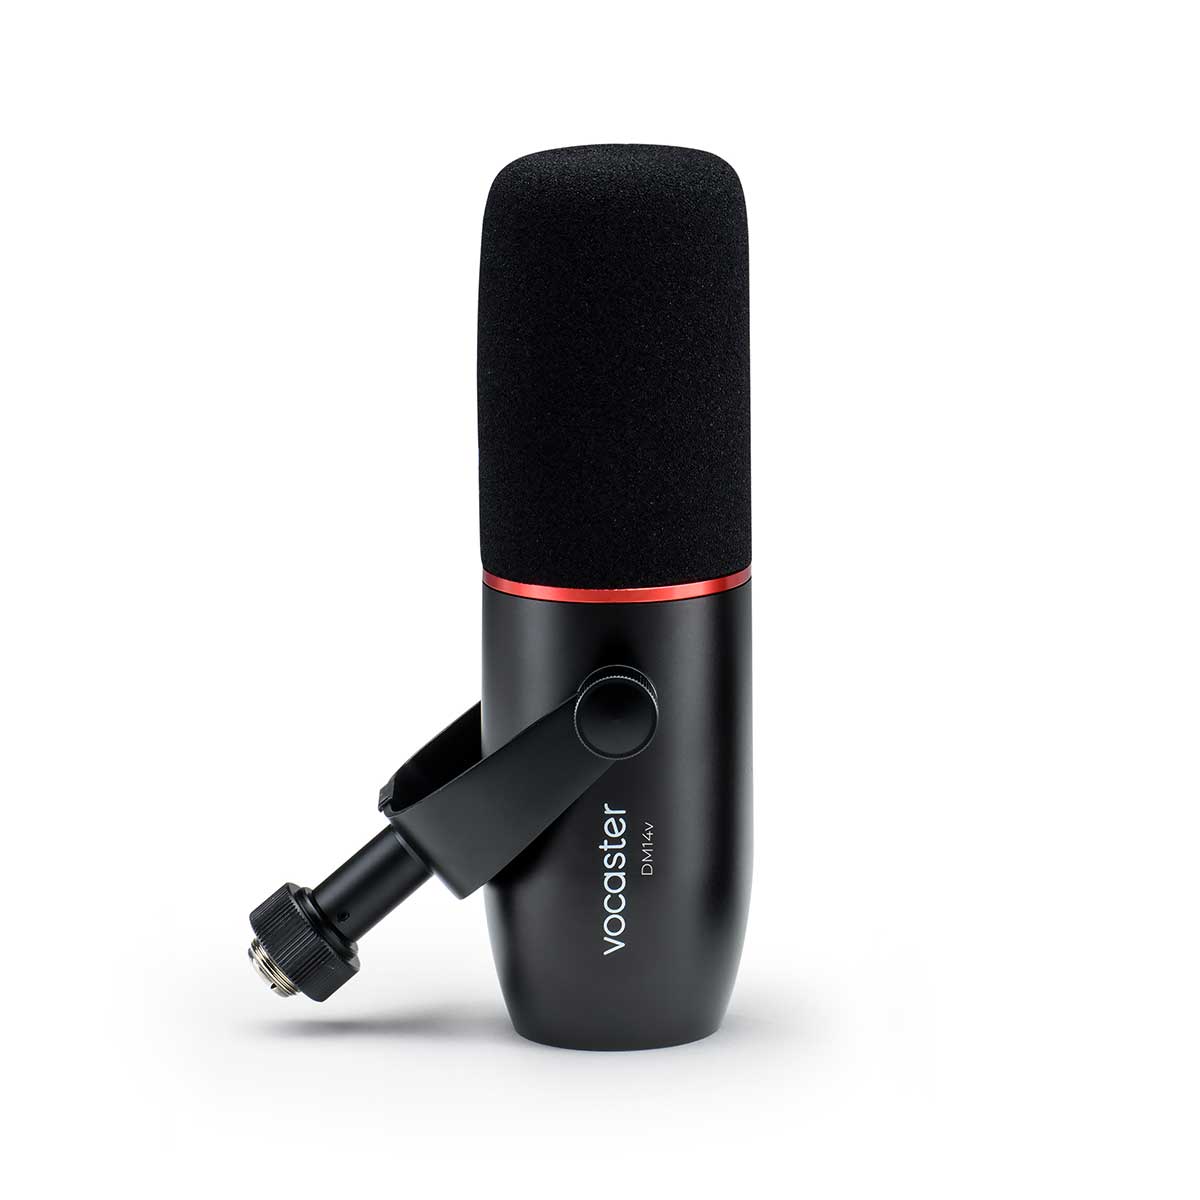 Focusrite Vocaster DM14v Dynamic Microphone